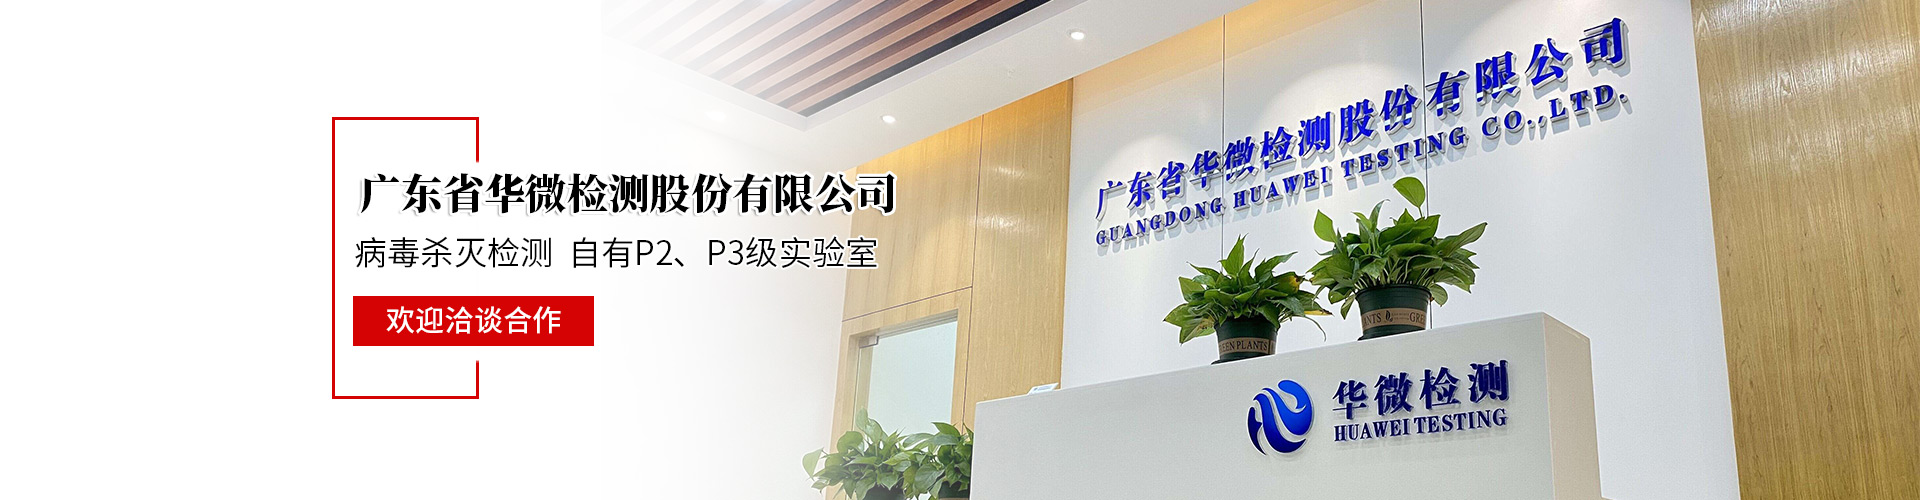 潮州消毒液检测正式标准 广东省华微检测股份有限公司